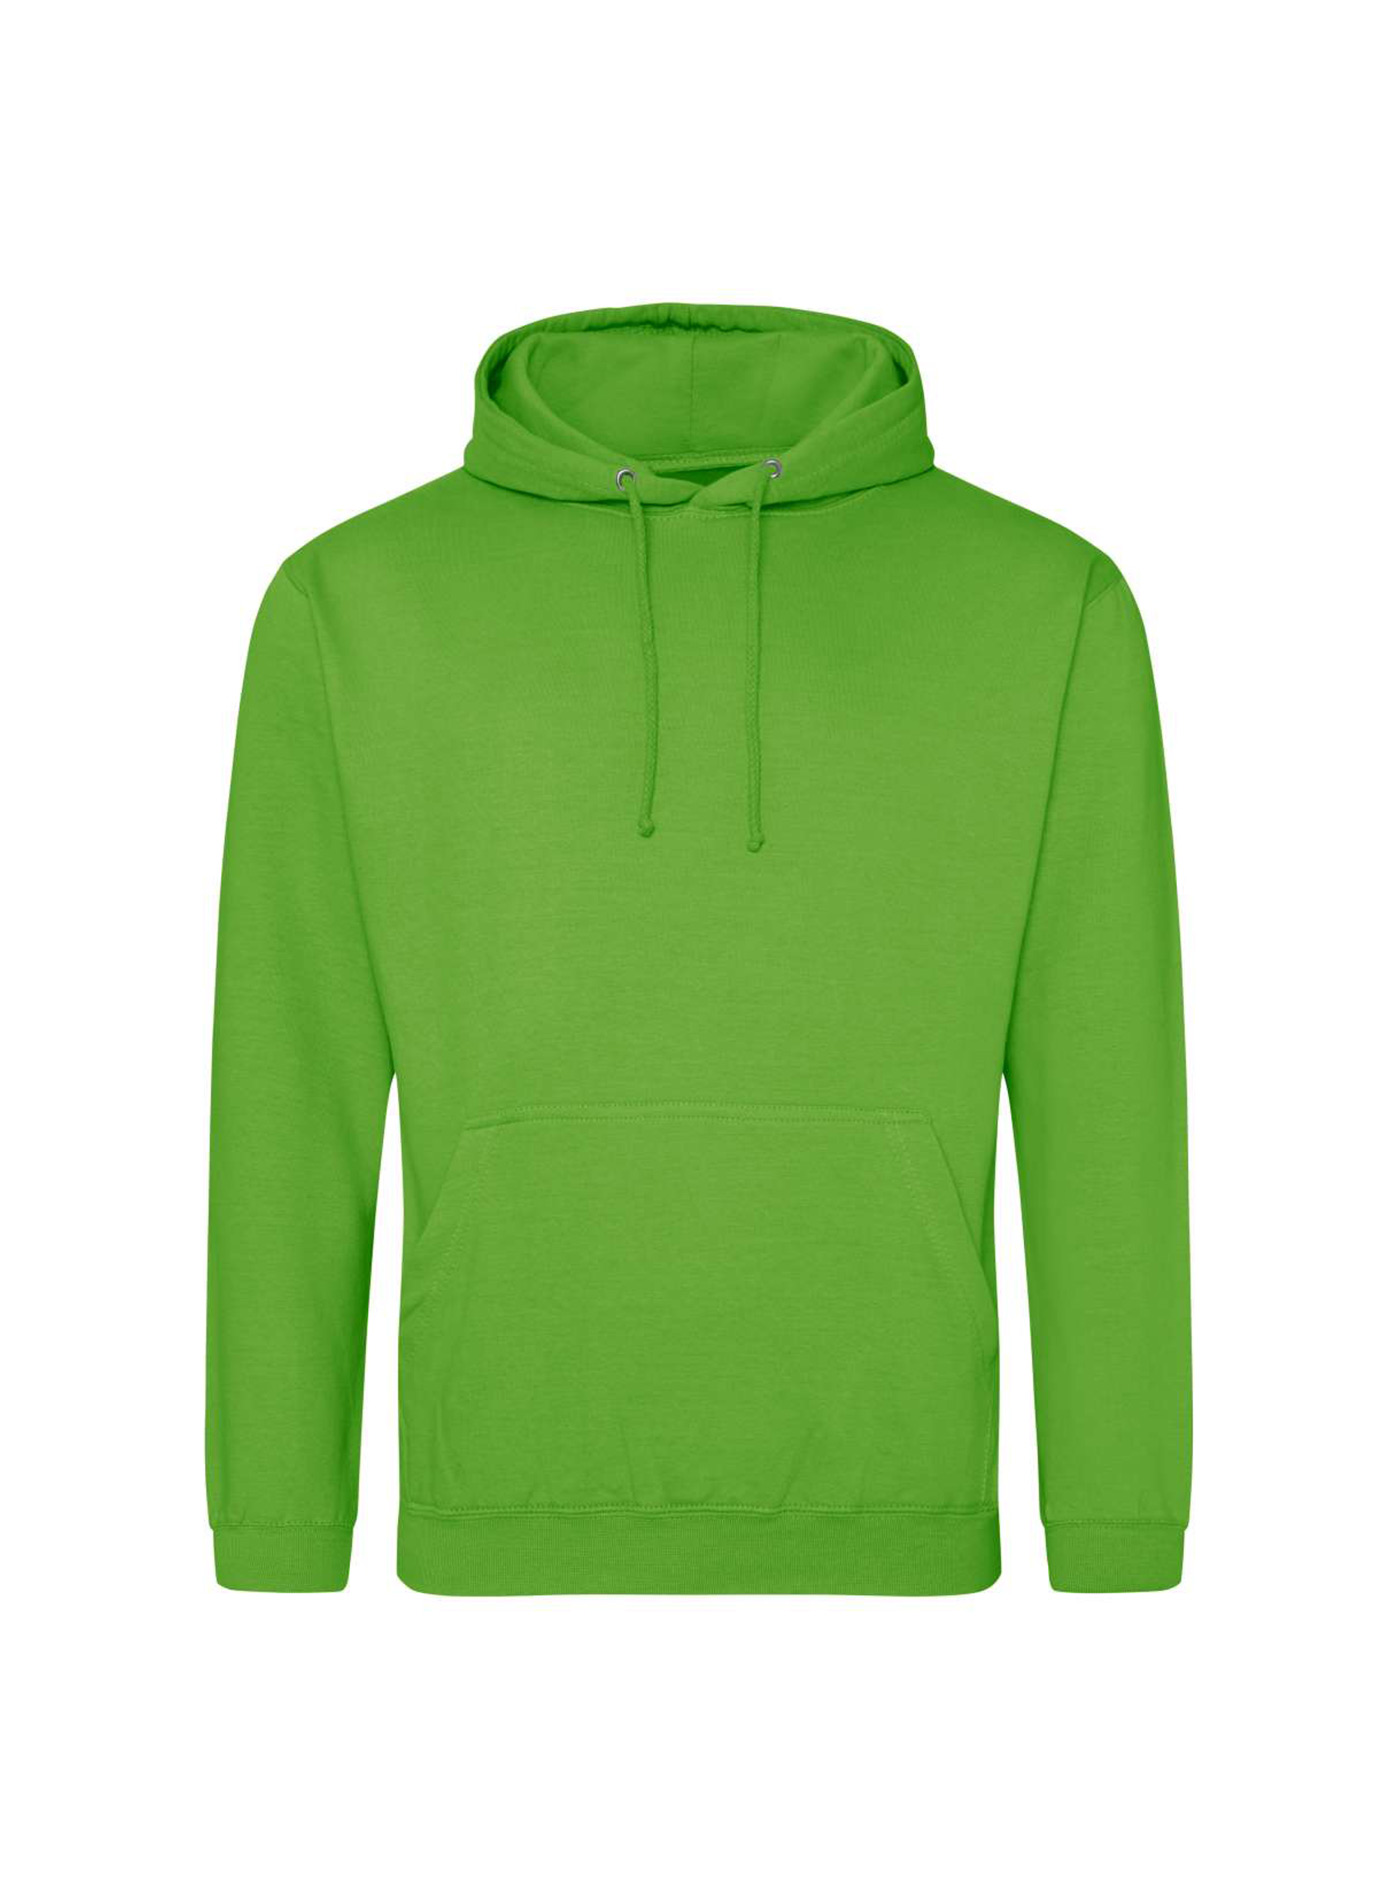 Mikina s kapucí unisex Just Hoods - Limetkově zelená M